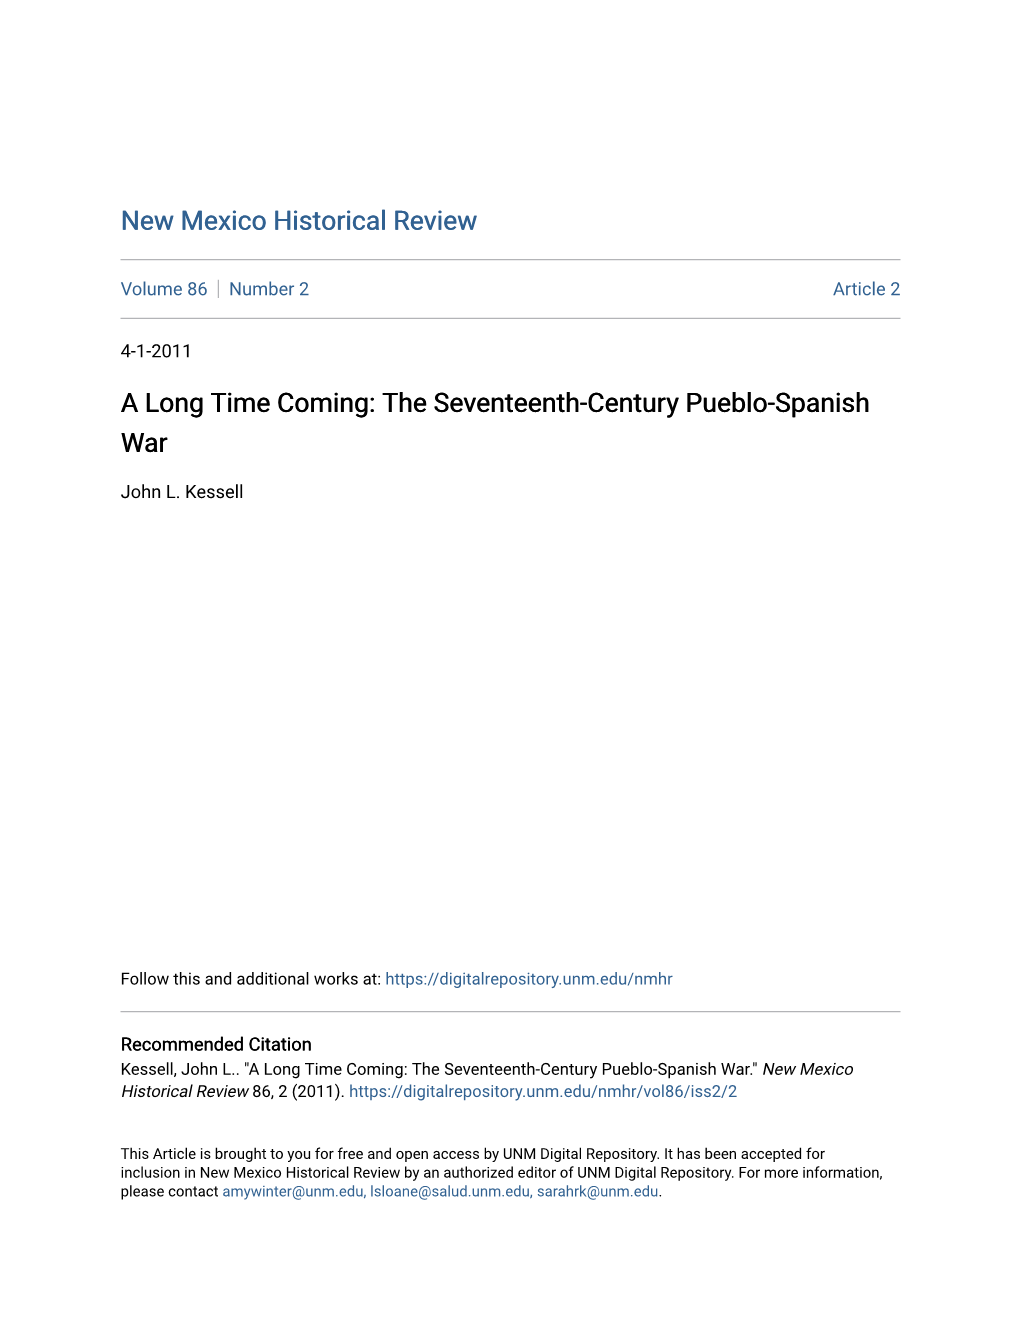 The Seventeenth-Century Pueblo-Spanish War